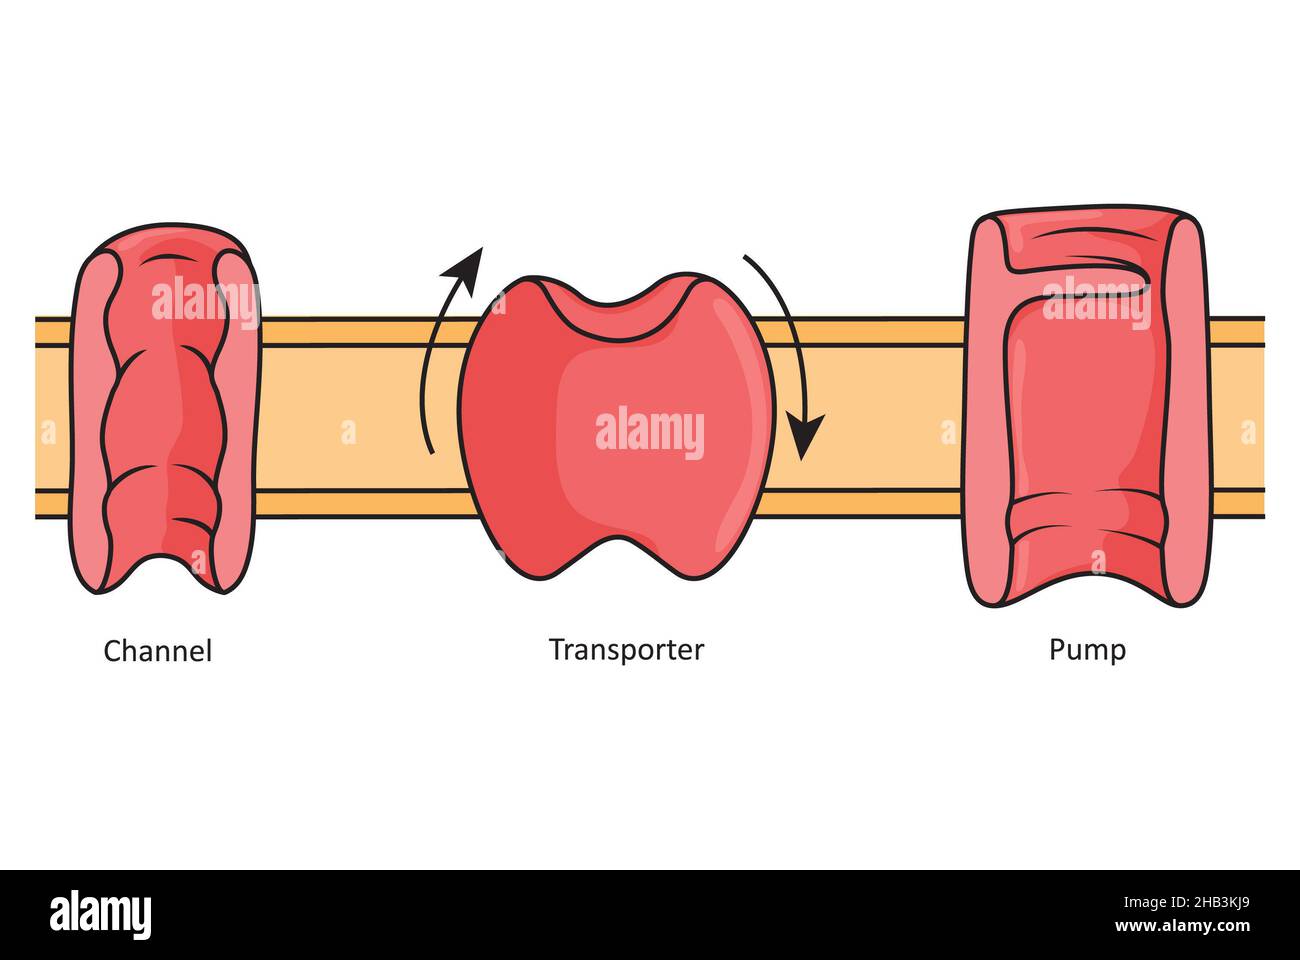 Kanäle, Transporter und Pumpen, einfache Abbildung mit verschiedenen transmembranen Proteinen. Stockfoto